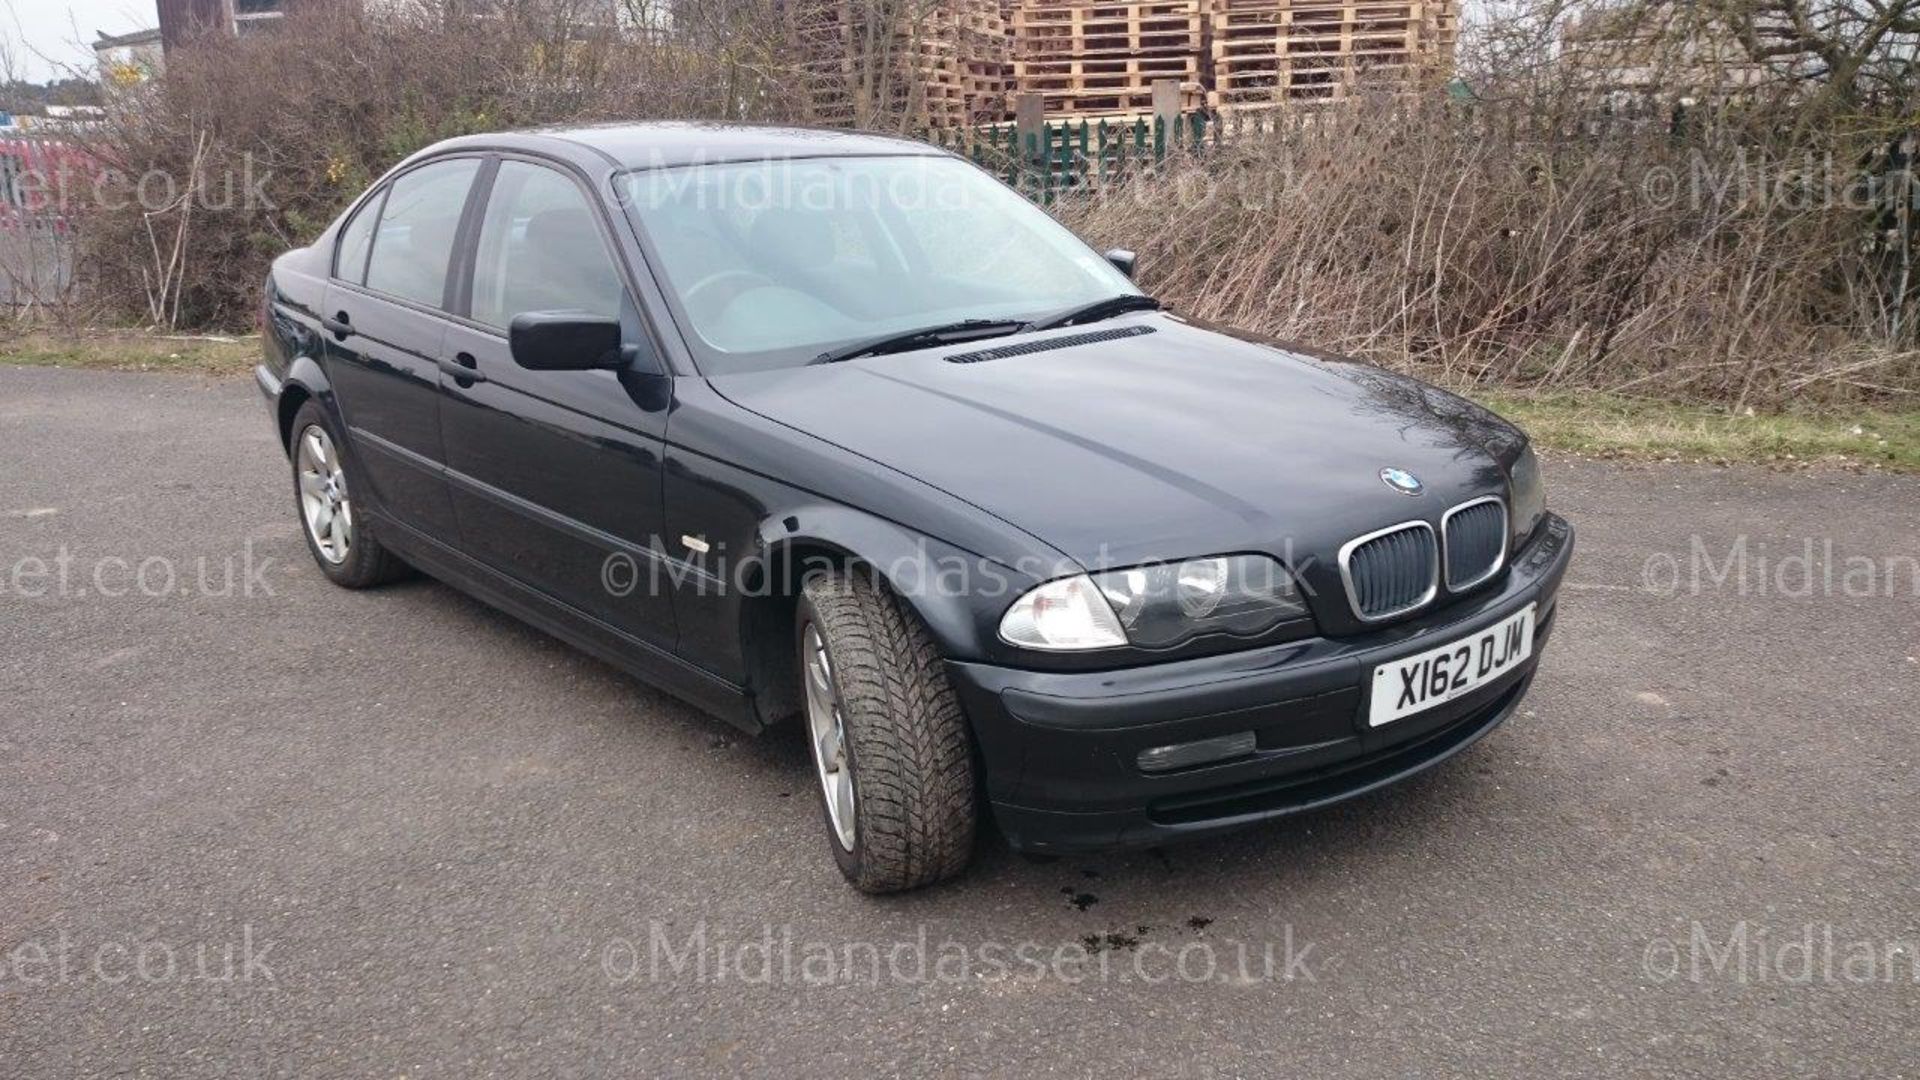 2001/X REG BMW 320D SE 4 DOOR SALOON  *NO VAT* - Image 2 of 16